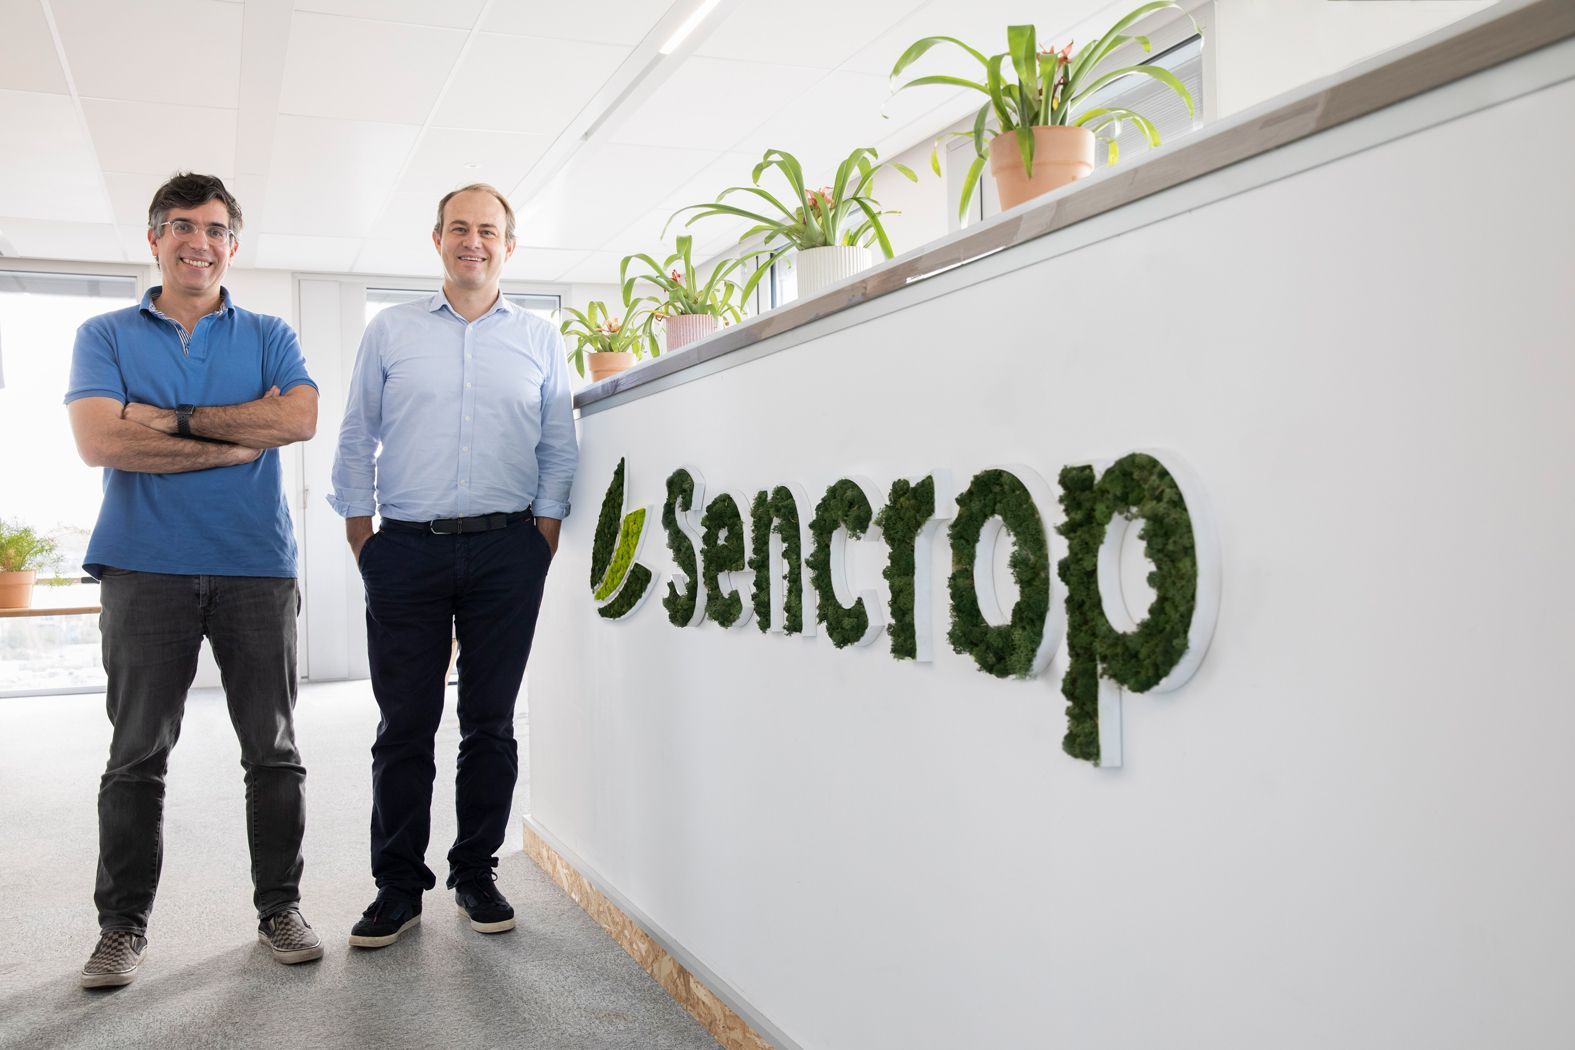 Sencrop, ein führendes Unternehmen im Bereich der Mikroklimatechnologie, erhält 18 Millionen Dollar in einer von JVP geführten Finanzierungsrunde zur Beschleunigung der Digitalisierung in der Landwirtschaft